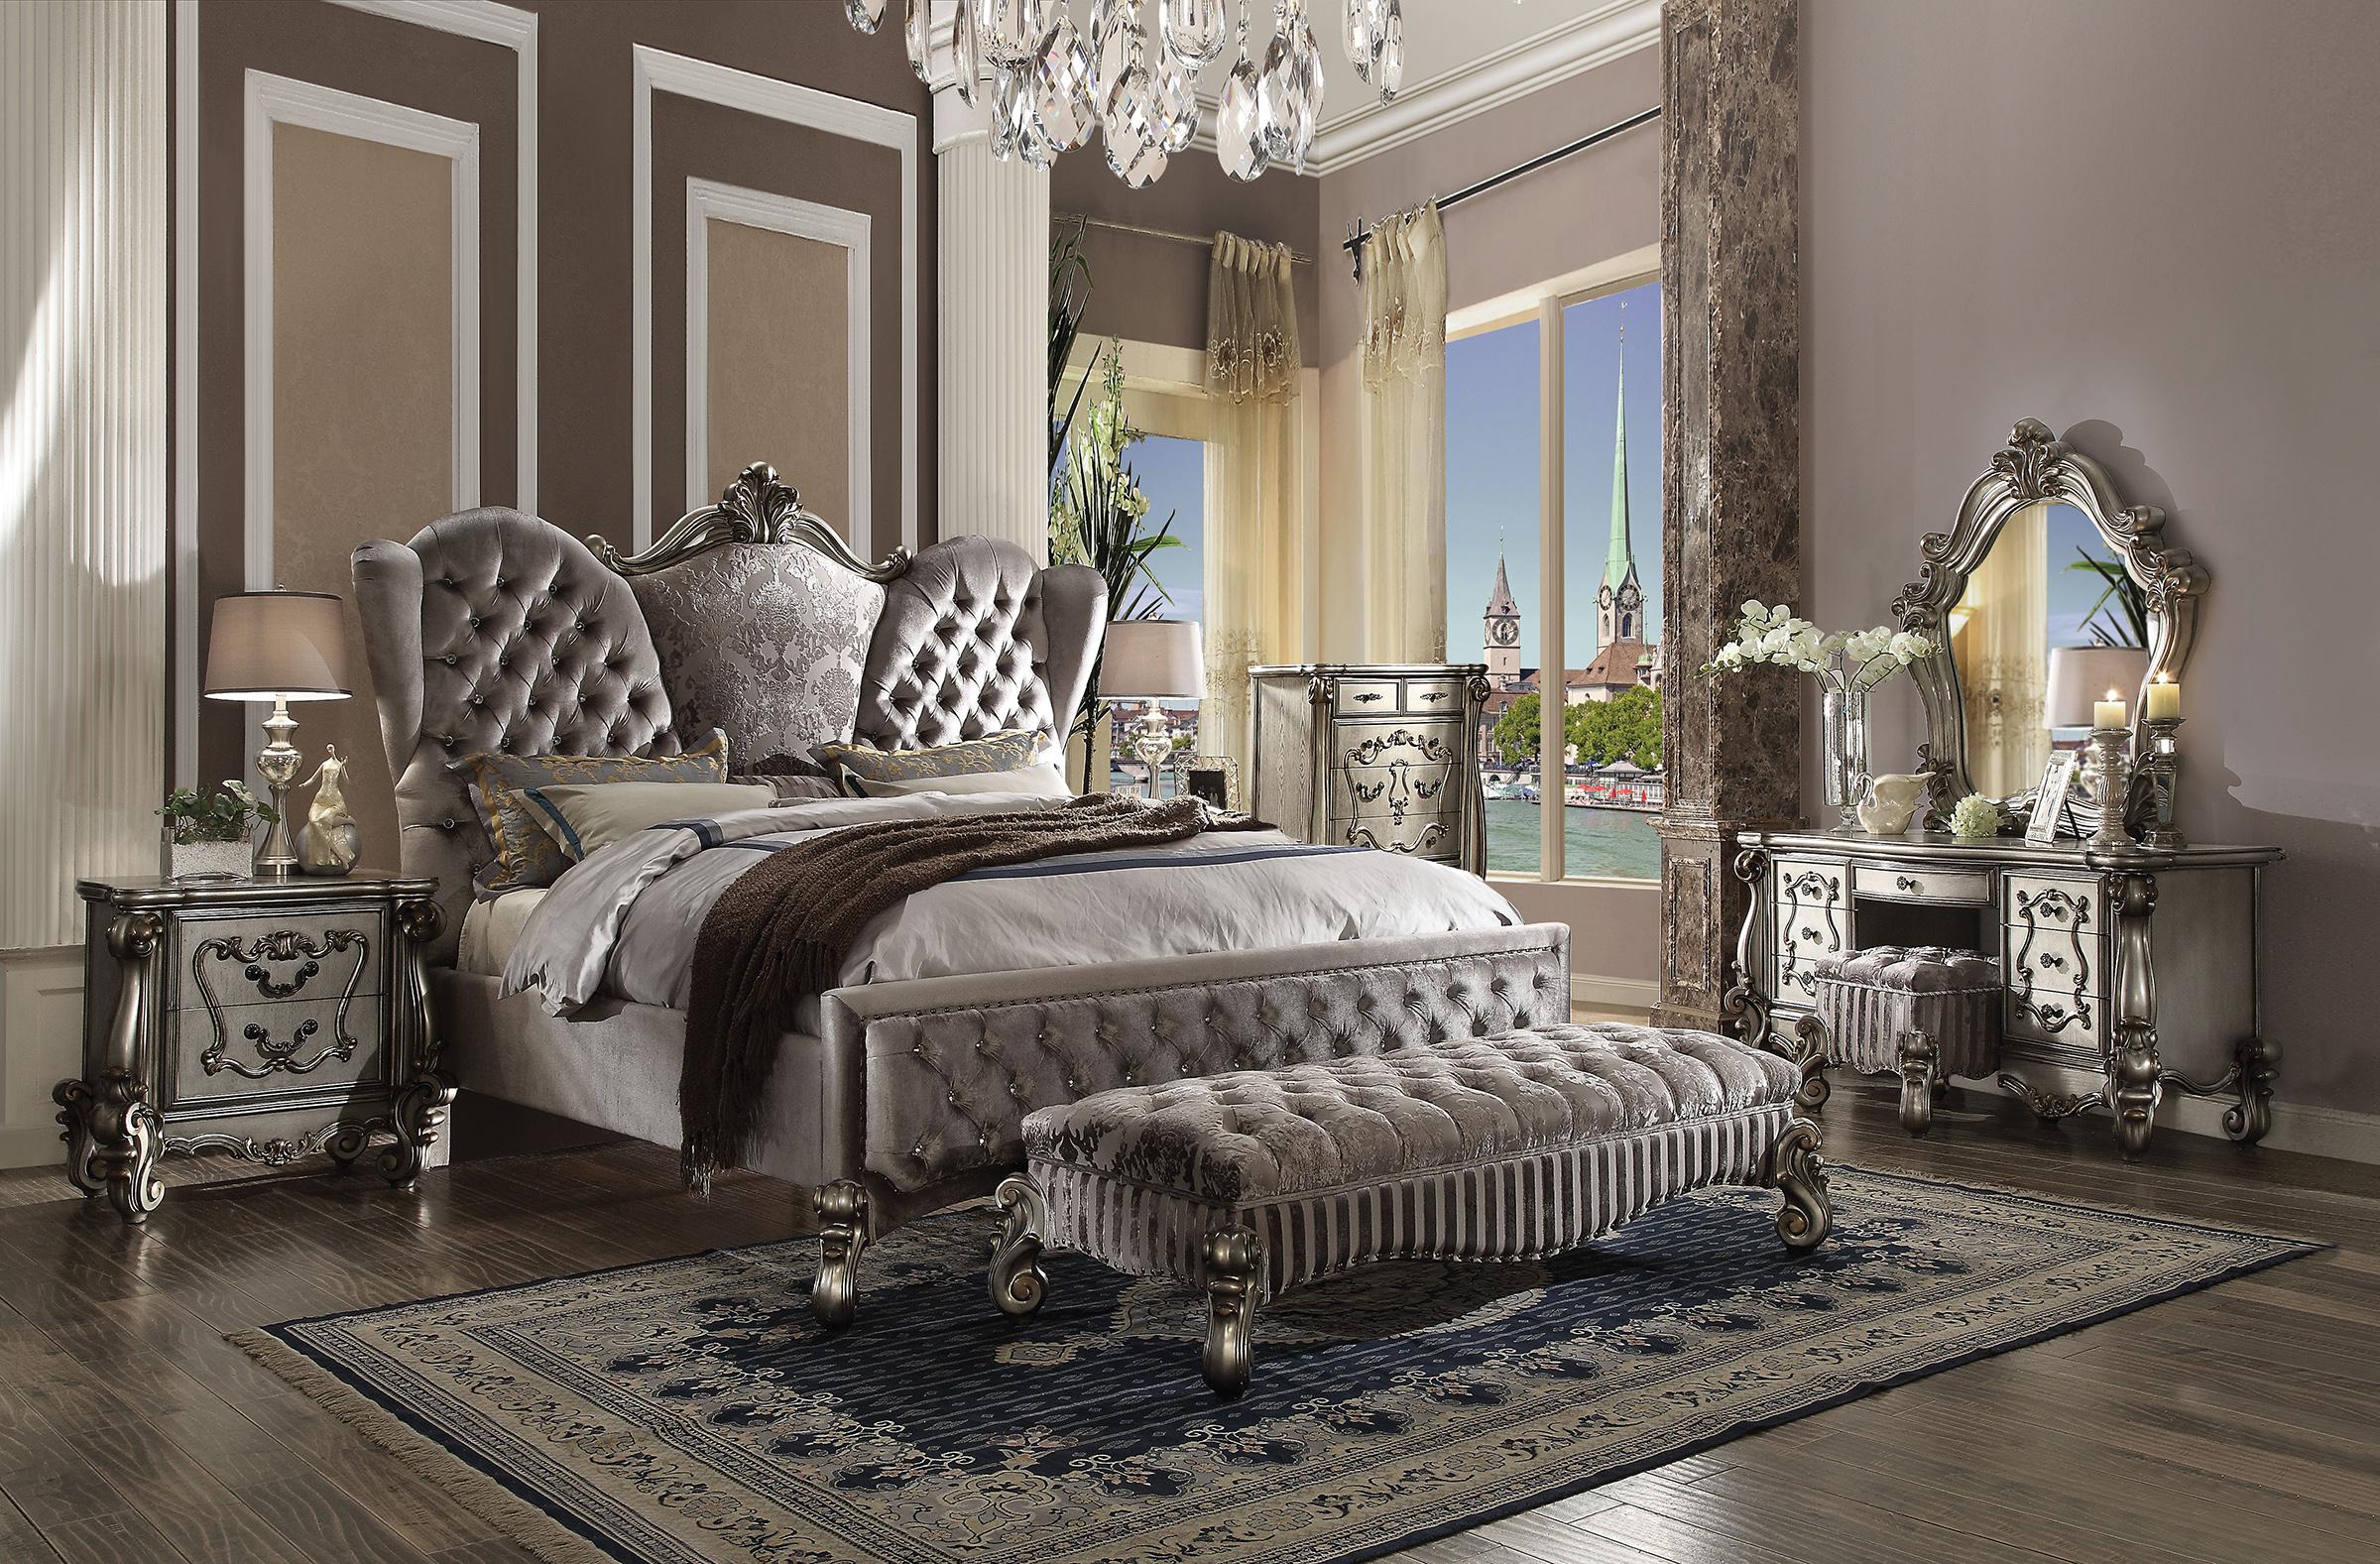 

    
Doline King Tufted Upholstered Bedroom Set 5Pcs Classic
